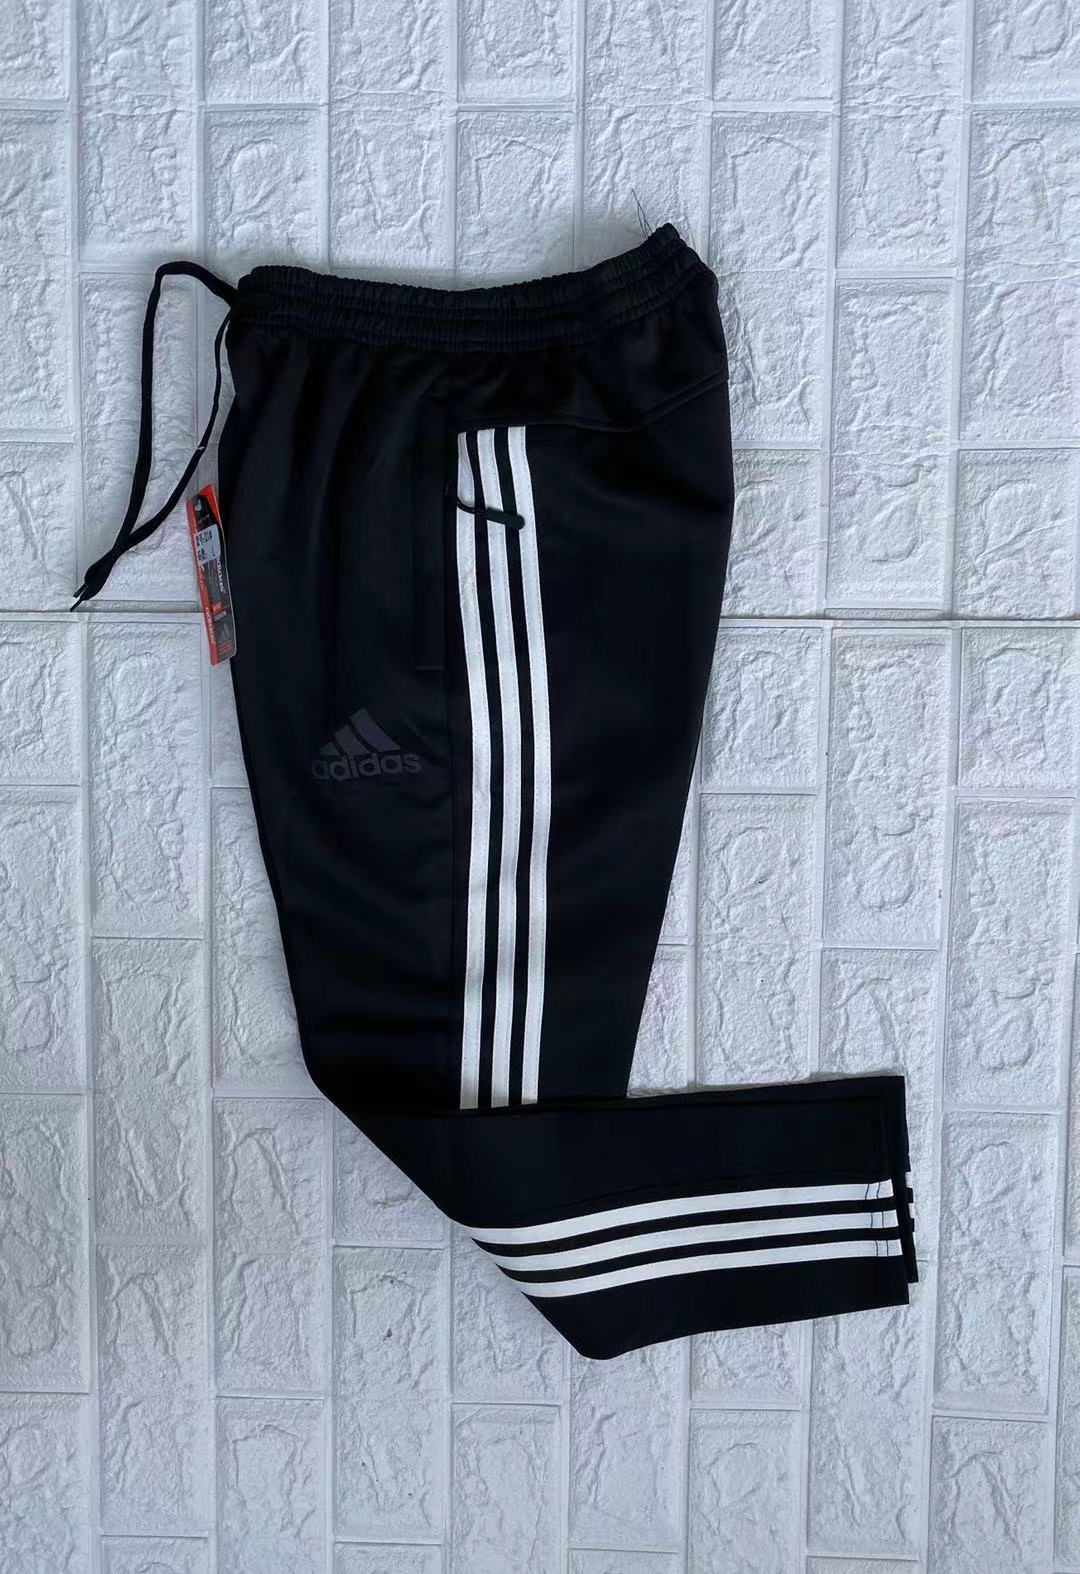 Bali Corp. Black Unique Leg Pants Women's M/M Button Up Side Gather |  eBay